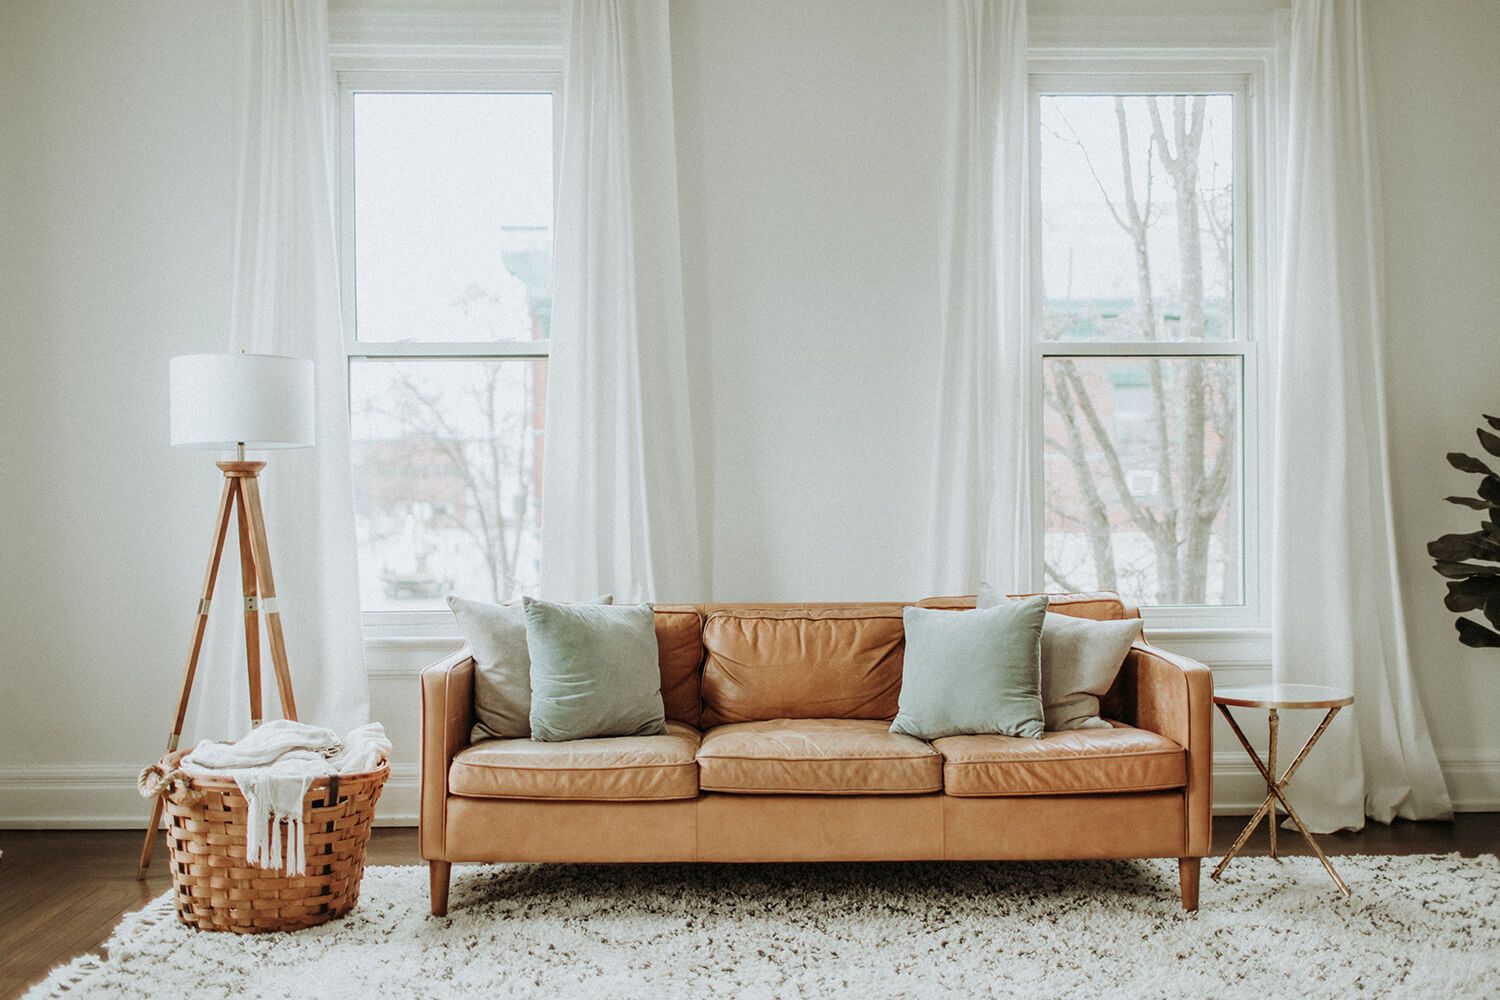 Come scegliere il divano giusto e adatto al tuo stile d'arredamento